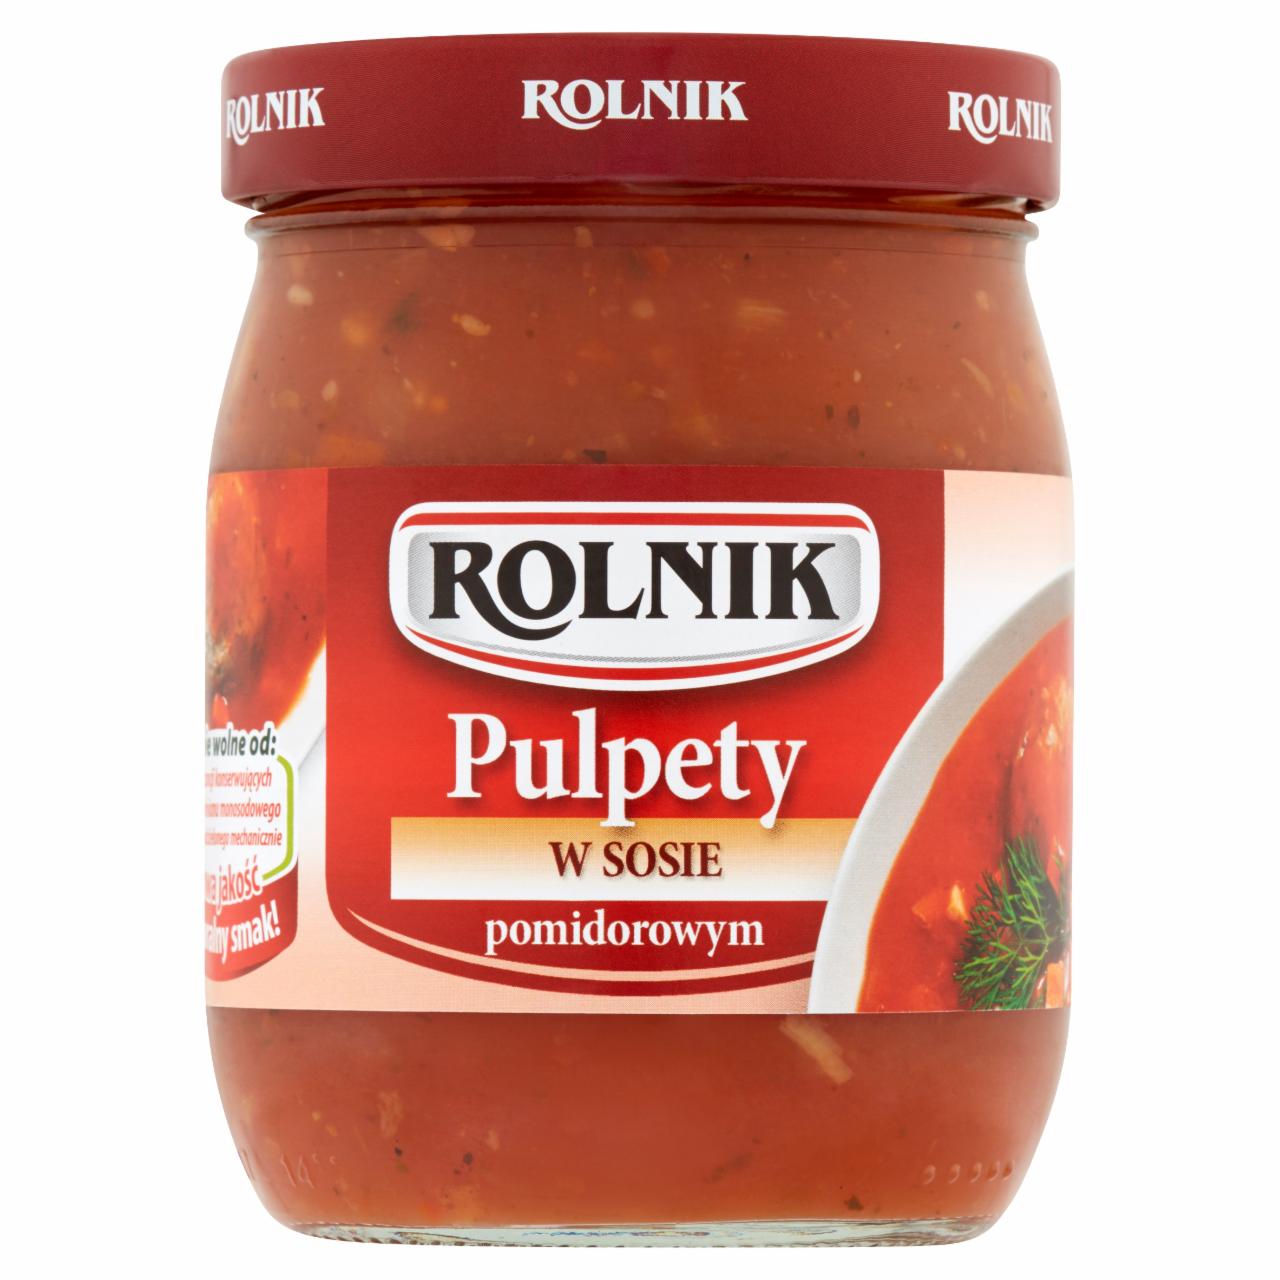 Zdjęcia - Rolnik Pulpety w sosie pomidorowym 510 g